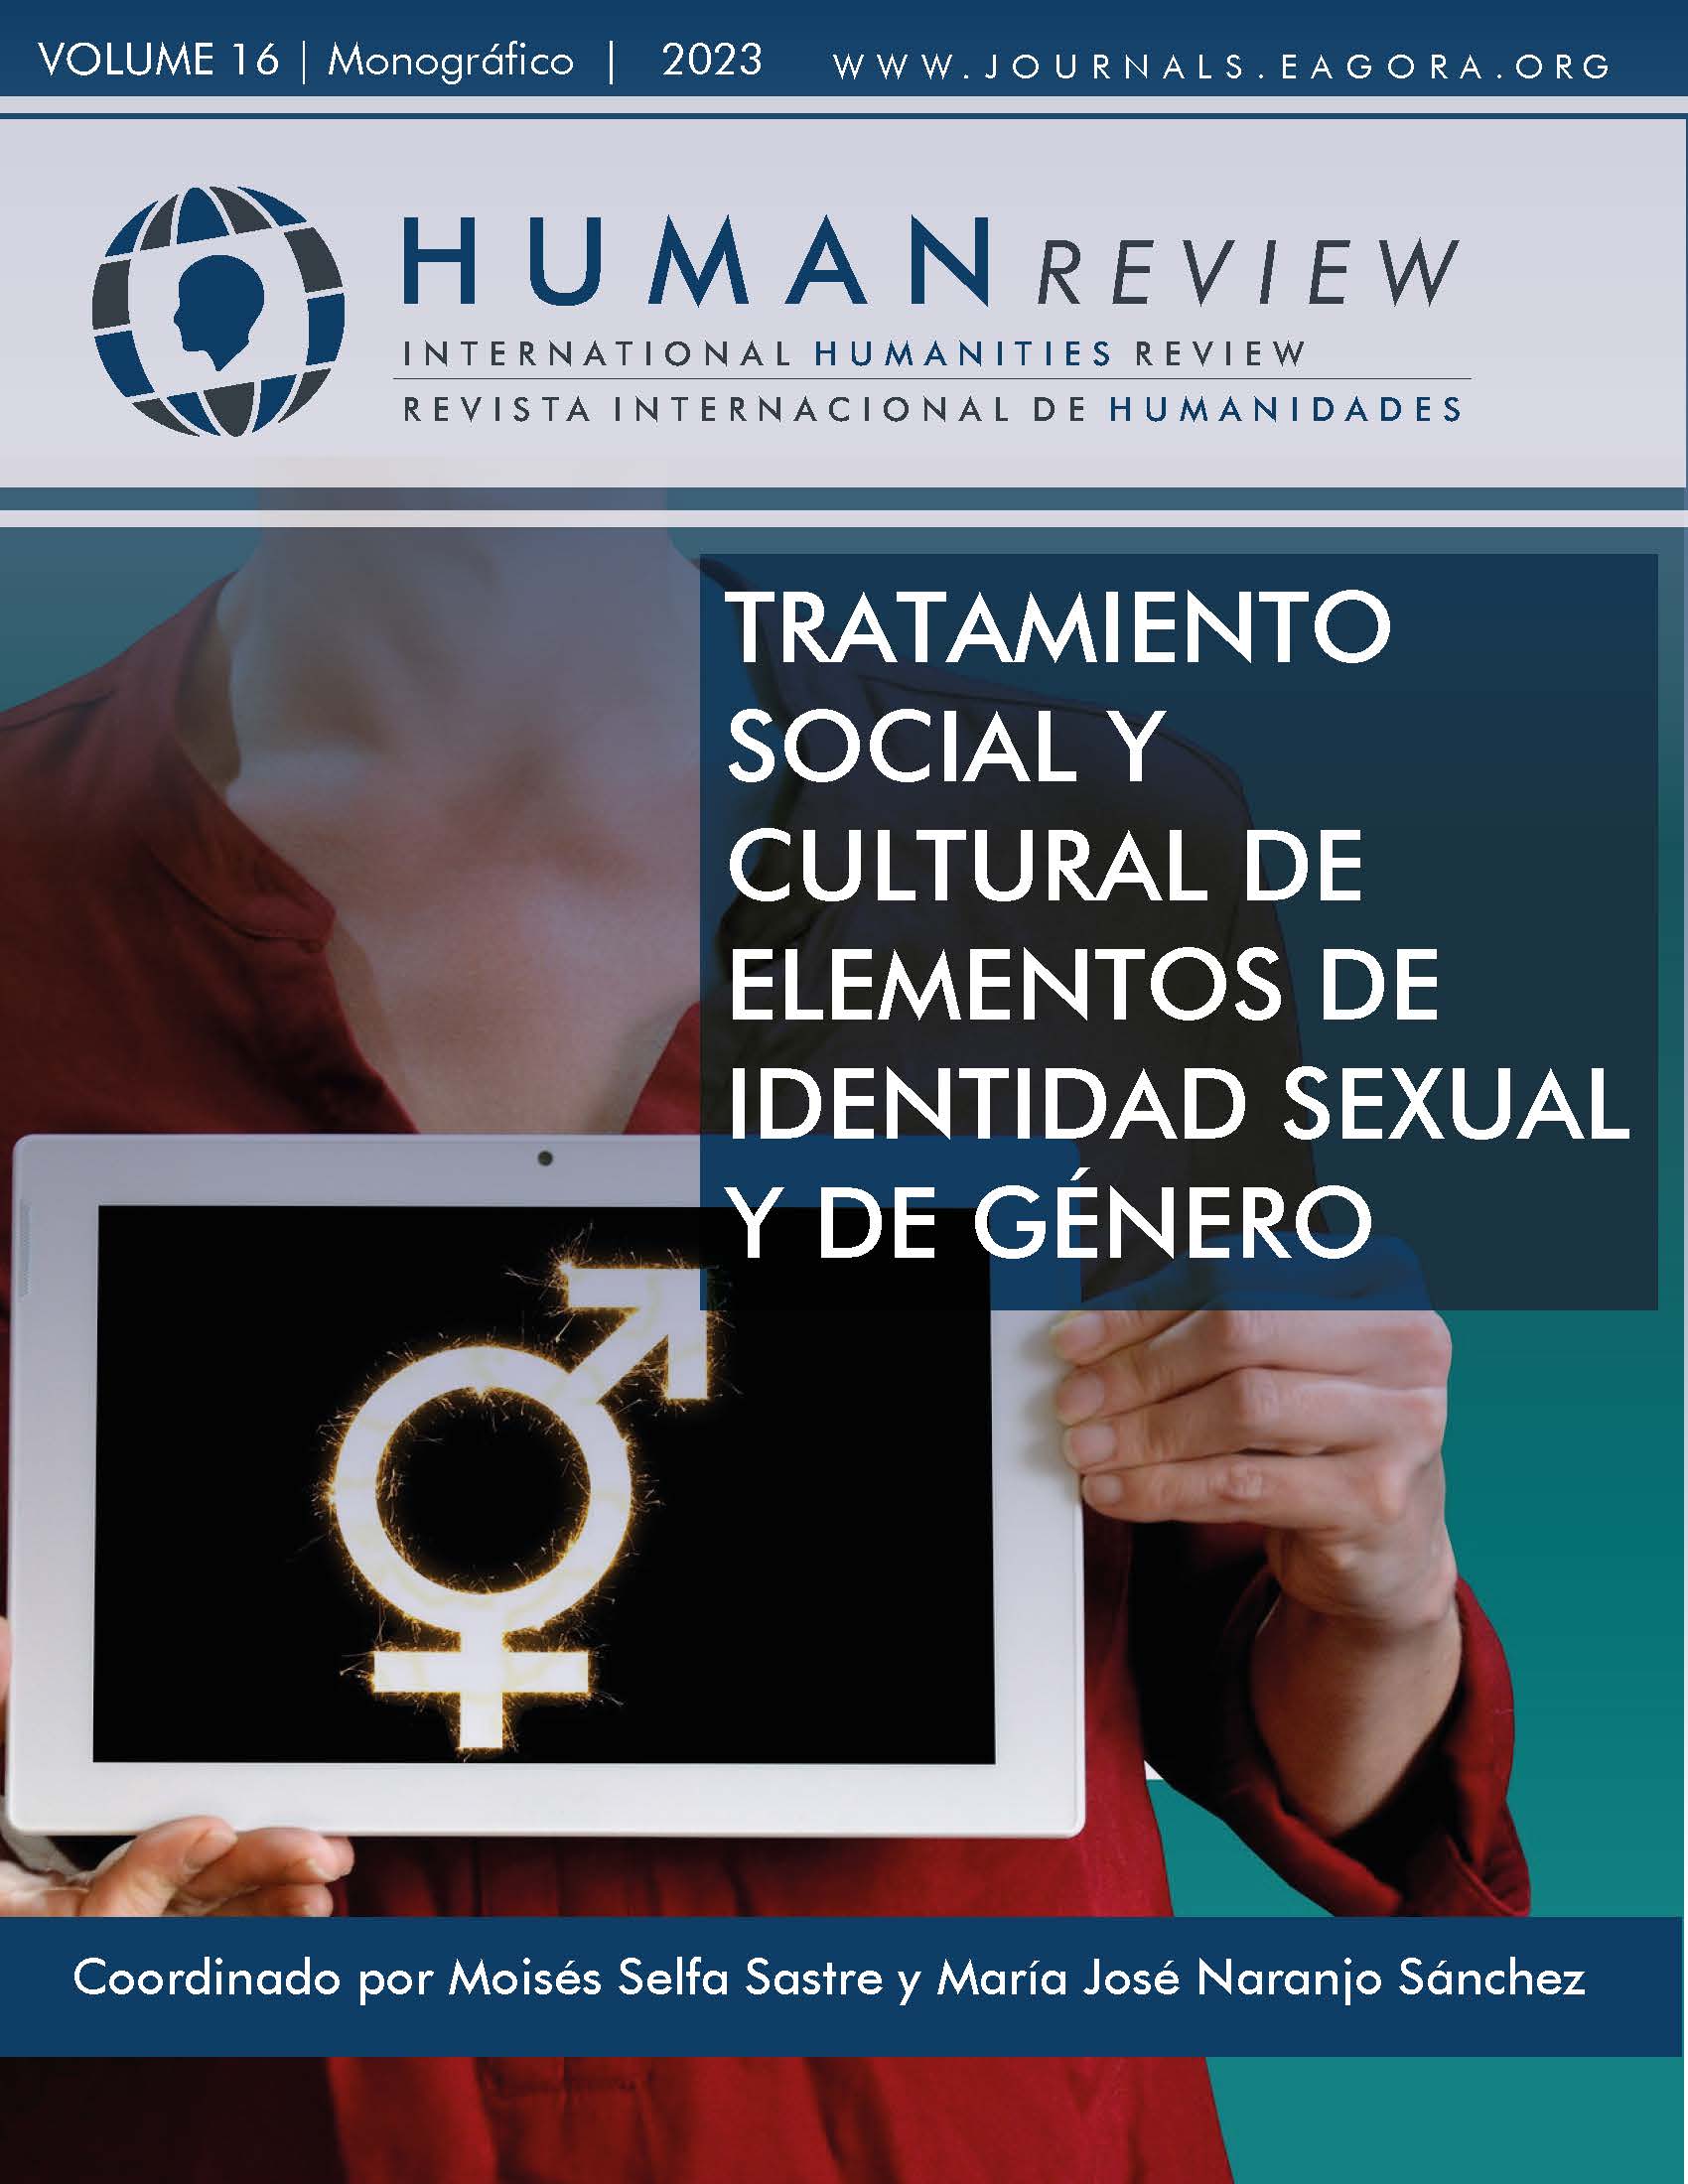 					Ver Vol. 16 Núm. 6 (2023): Monográfico: "Tratamiento social y cultural de elementos de identidad sexual y género"
				